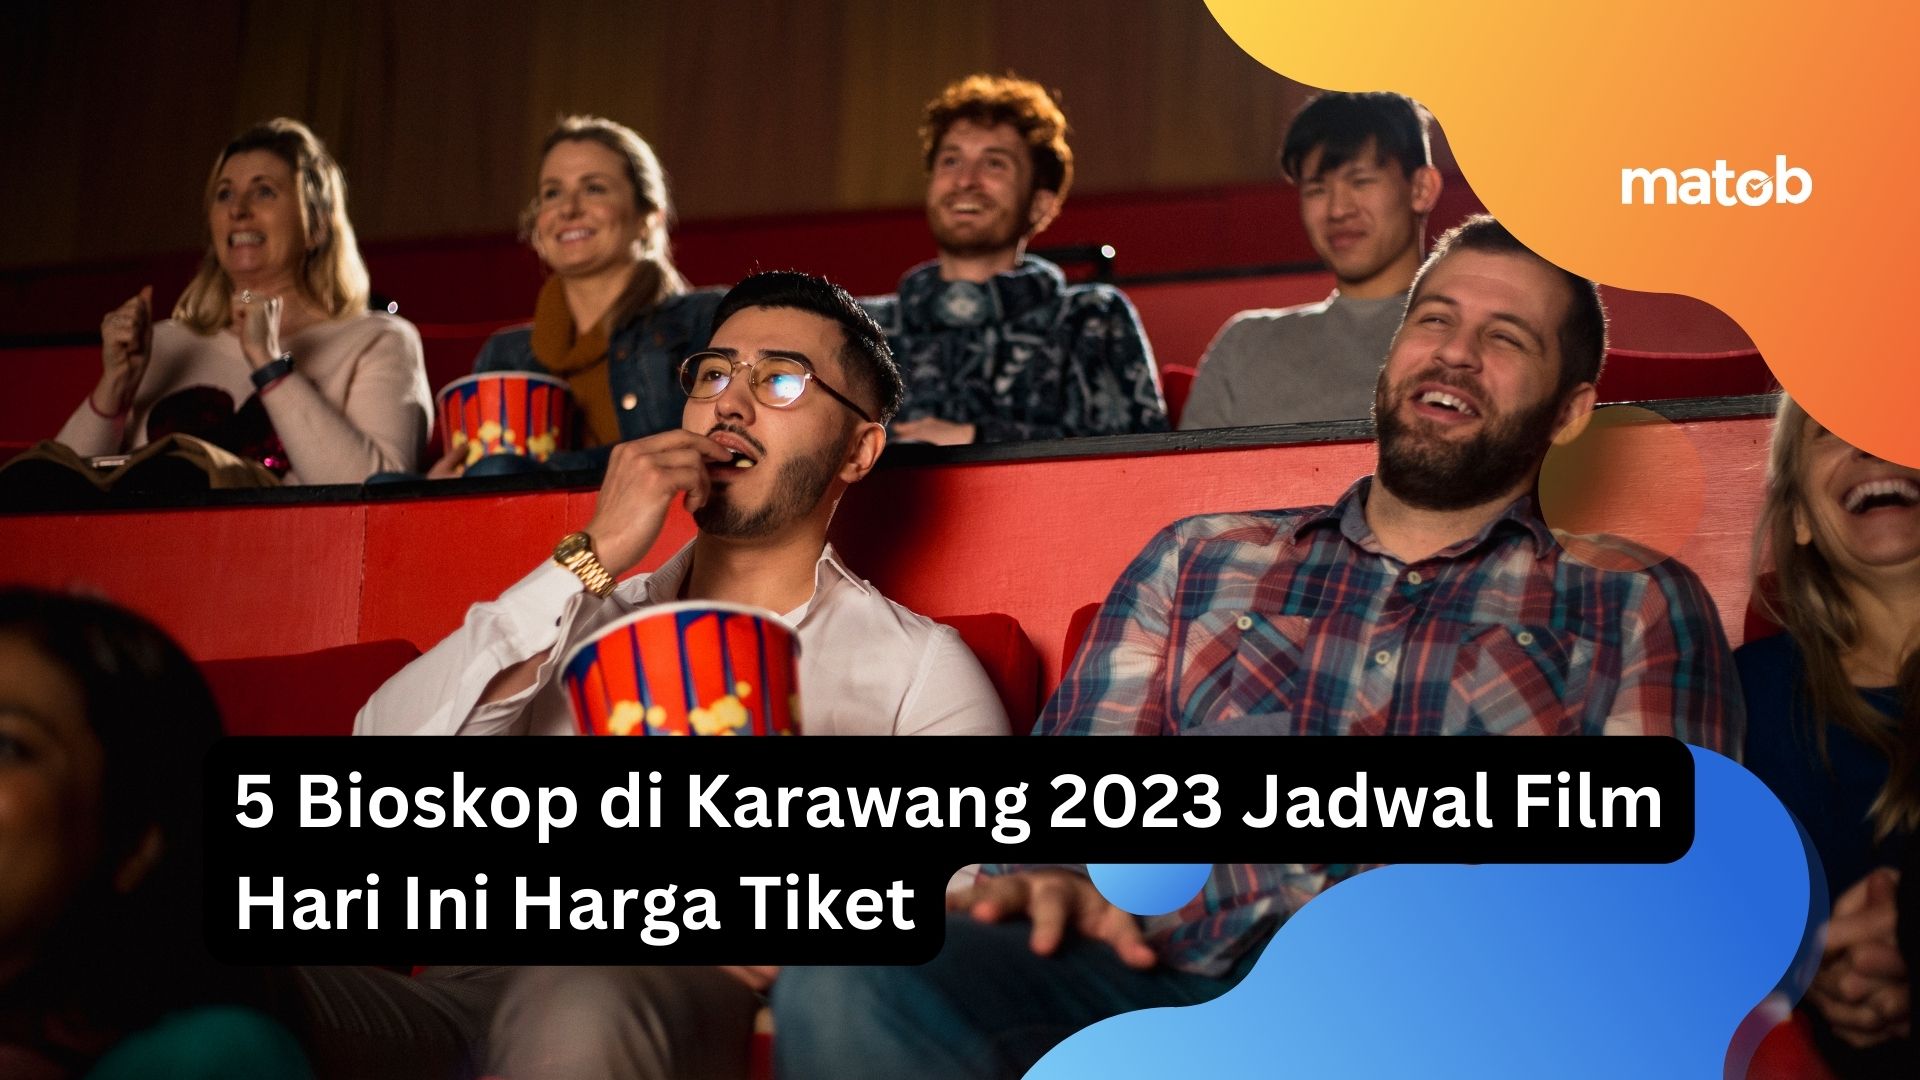 5 Bioskop di Karawang 2023 Jadwal Film Hari Ini Harga Tiket